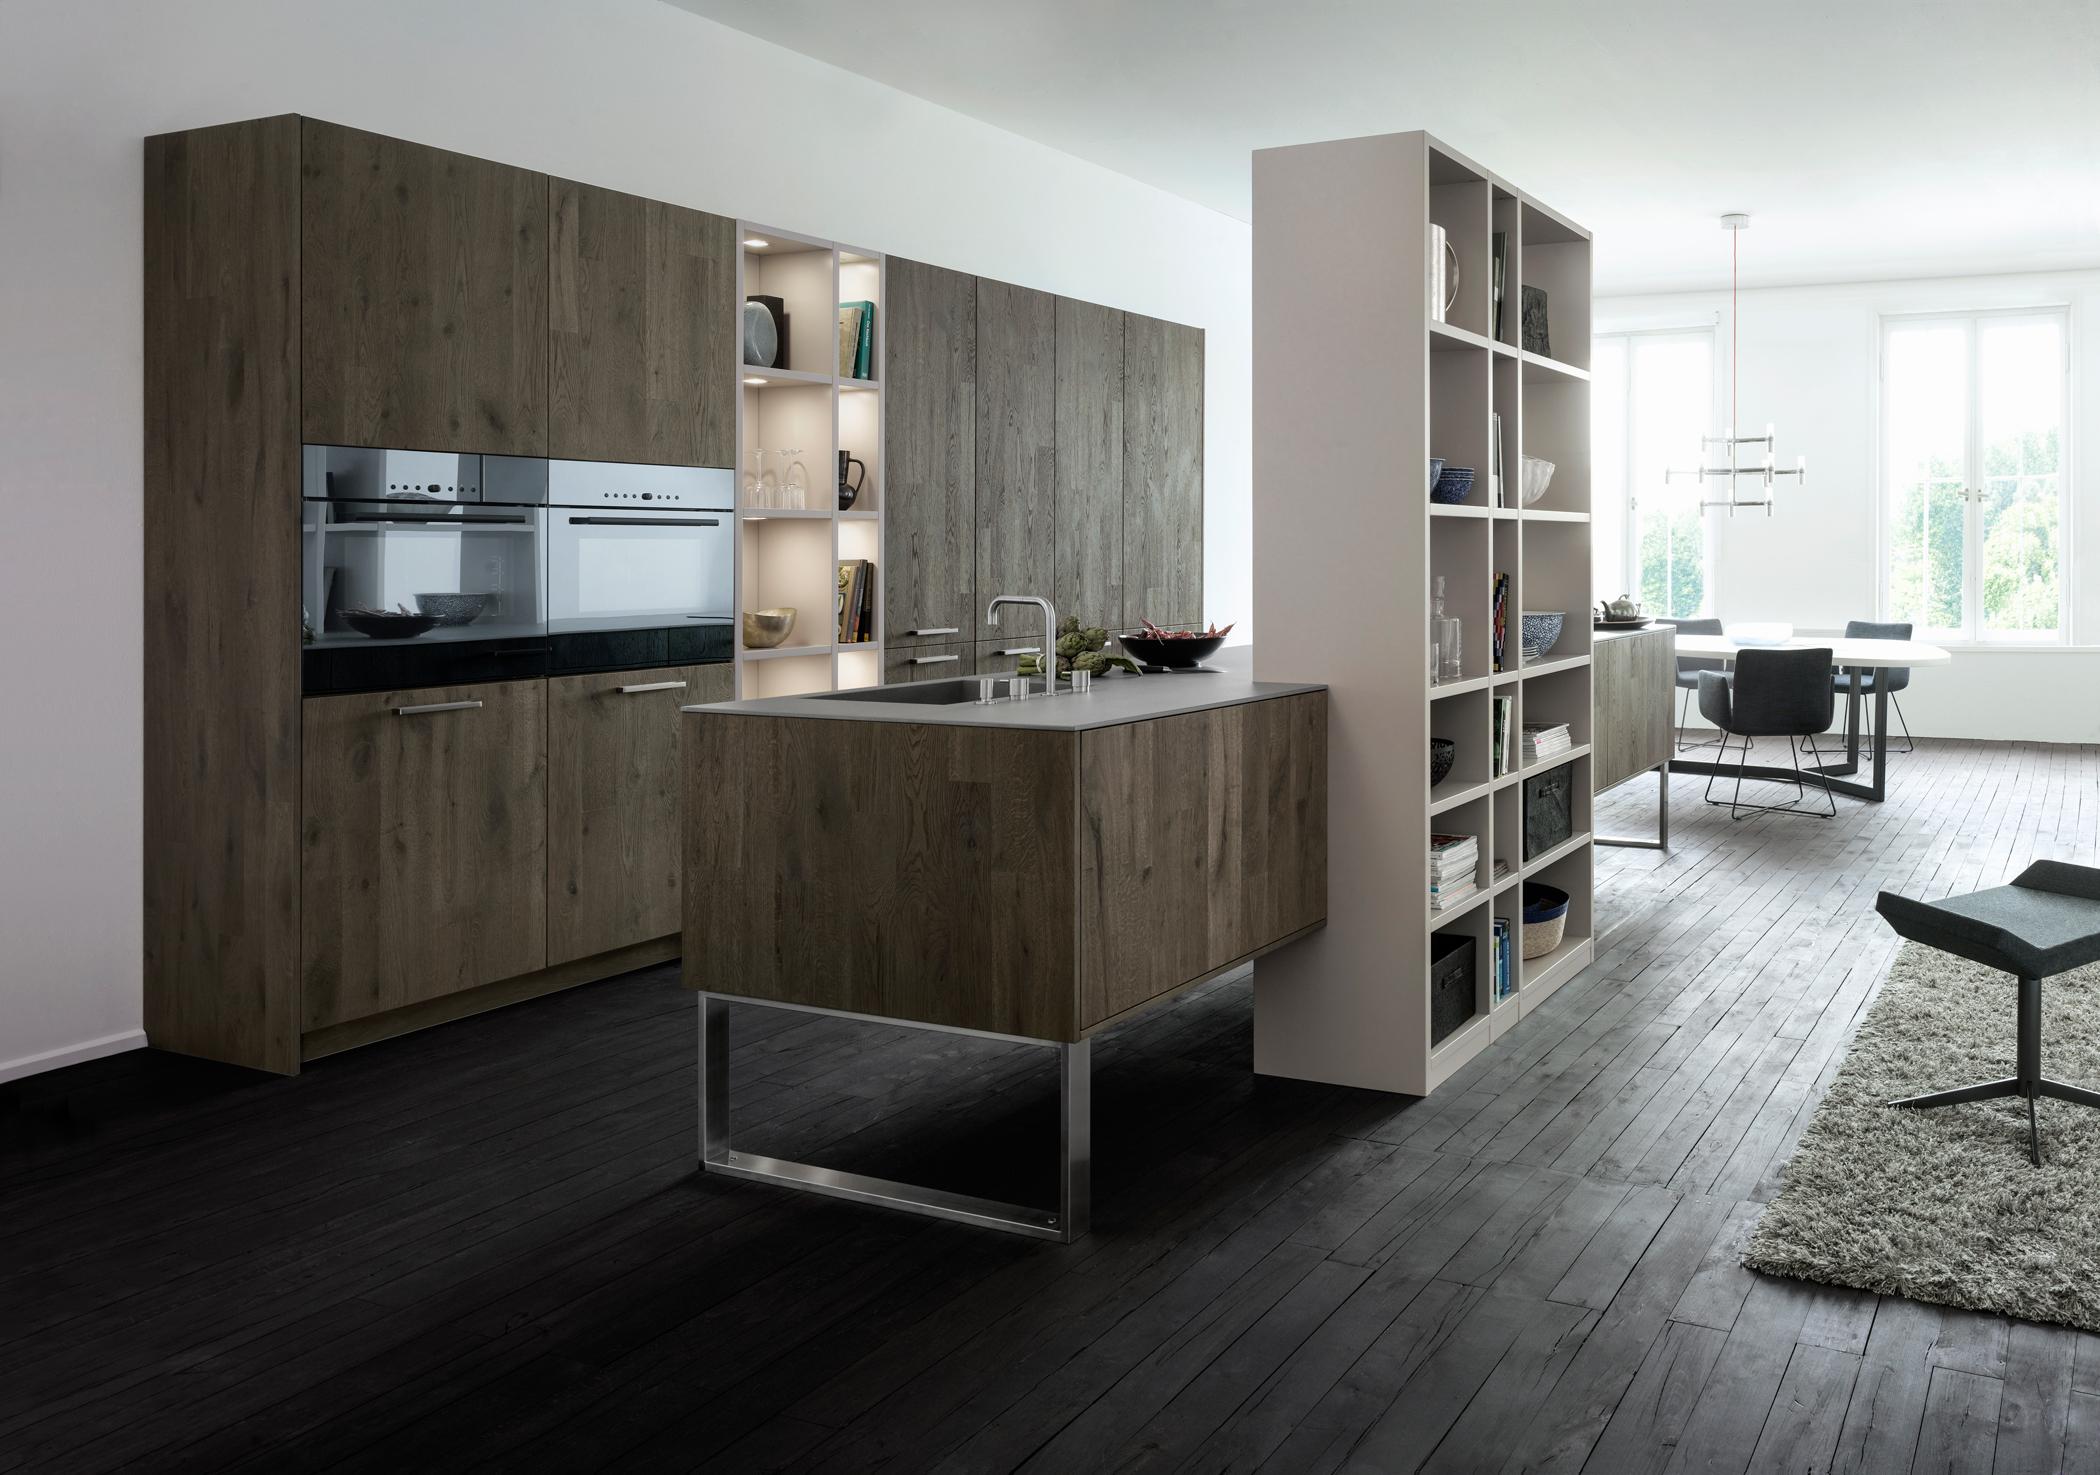 Offene Küche mit elegantem Massivholzcharakter #wohnküche #offeneküche #küchengestaltung ©Leicht Küchen